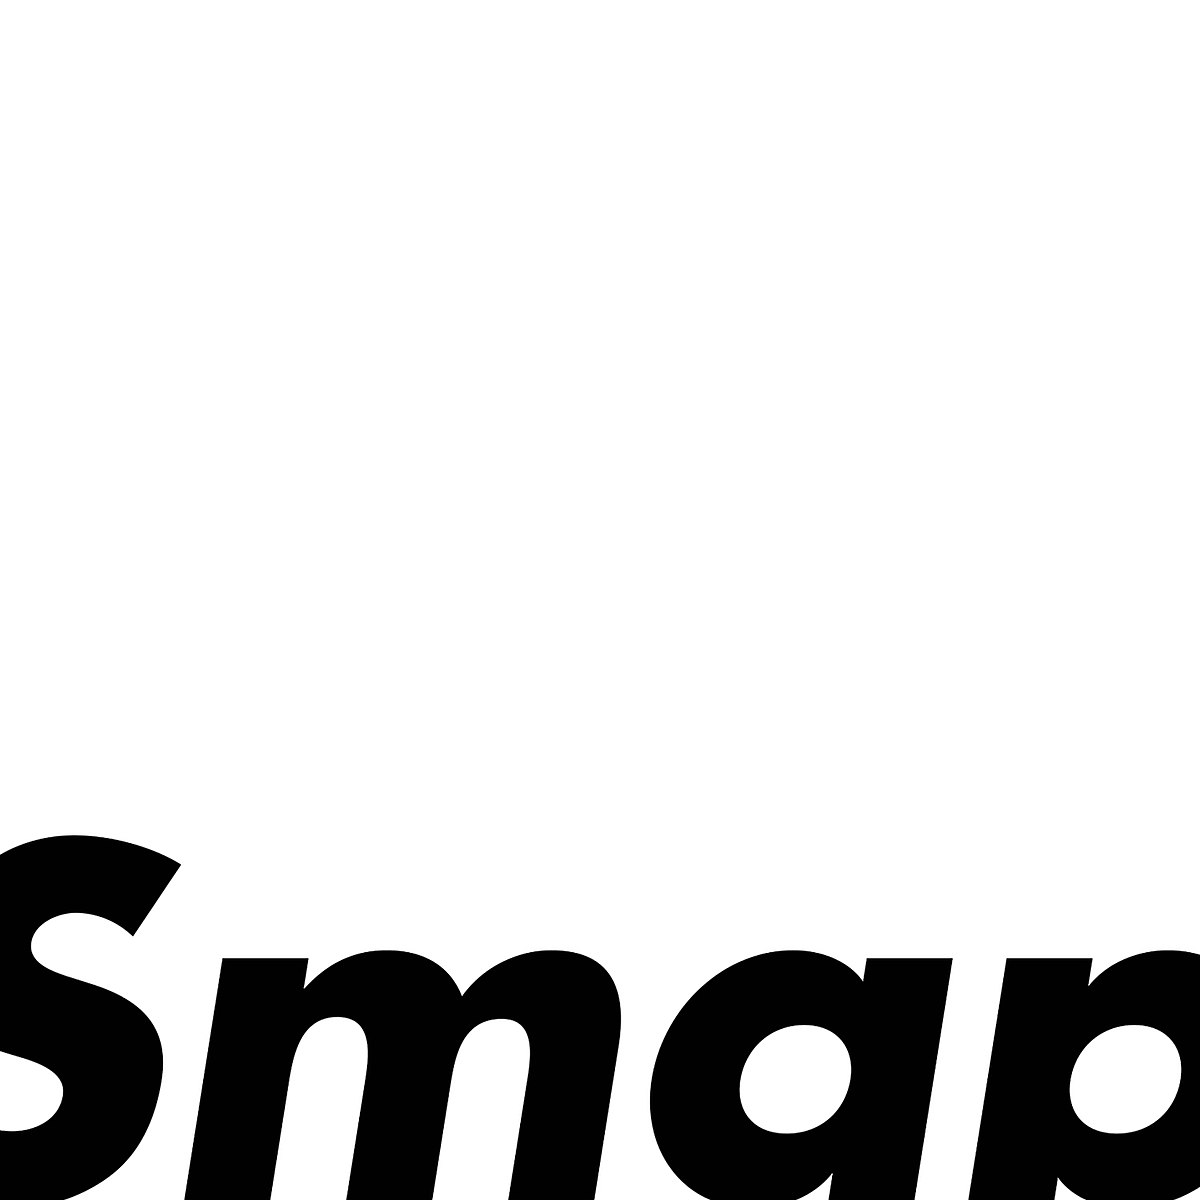 SMAP 25 Years - Wikipedia